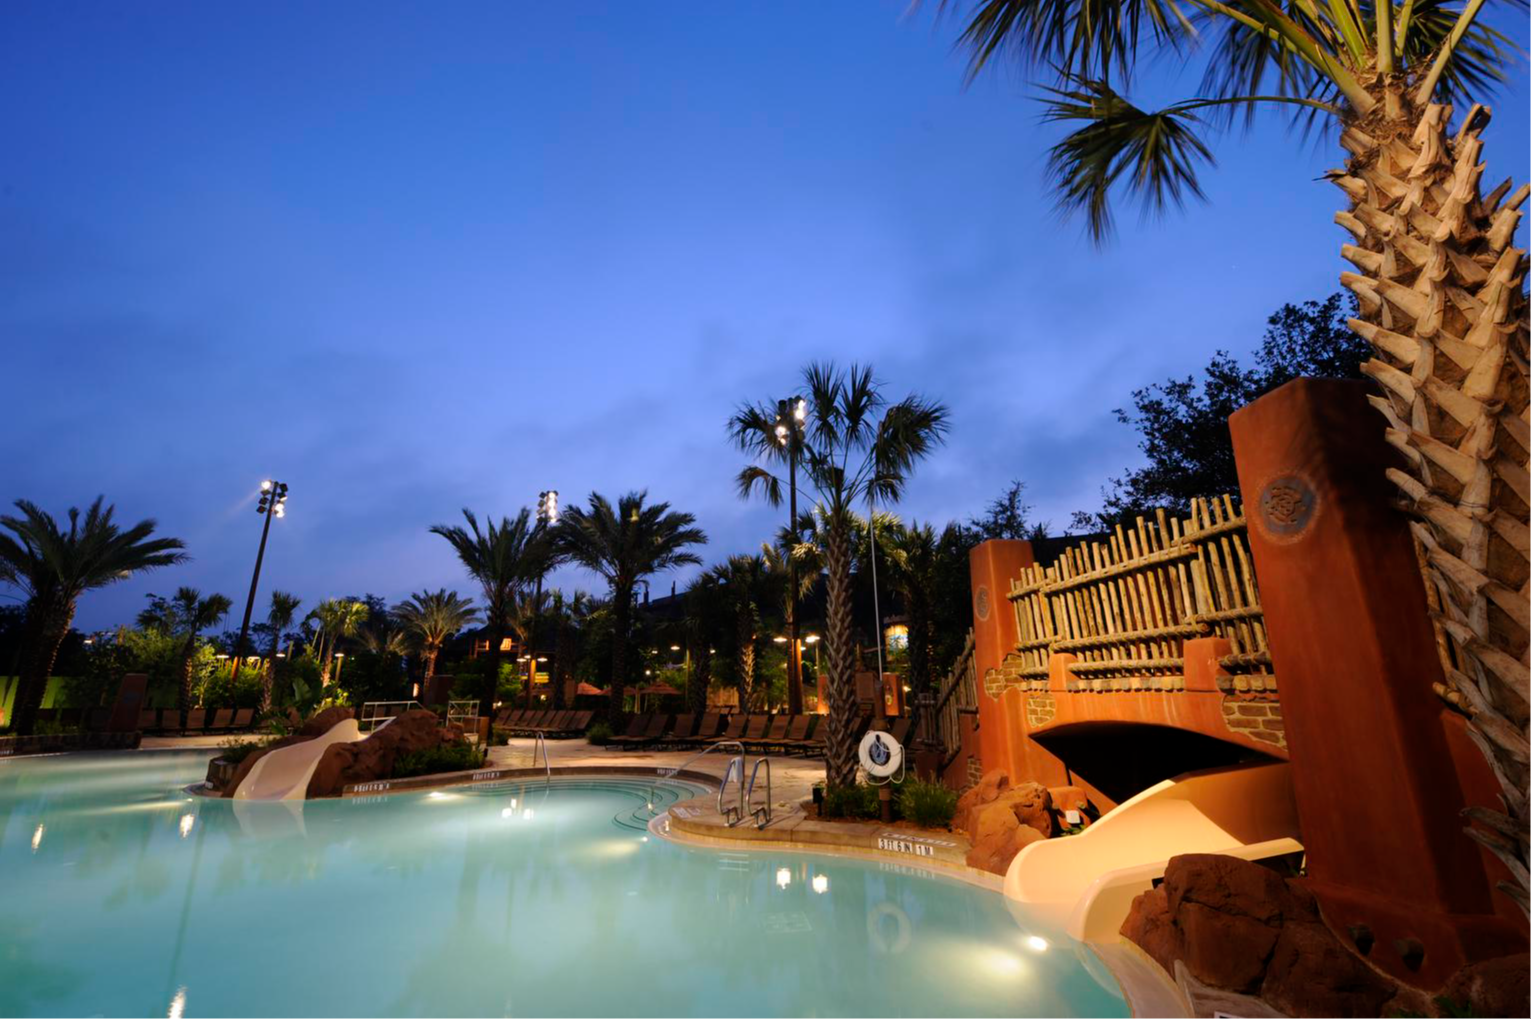 Disney’s Animal Kingdom Villas - Kidani Village au Walt Disney World Resort en Floride